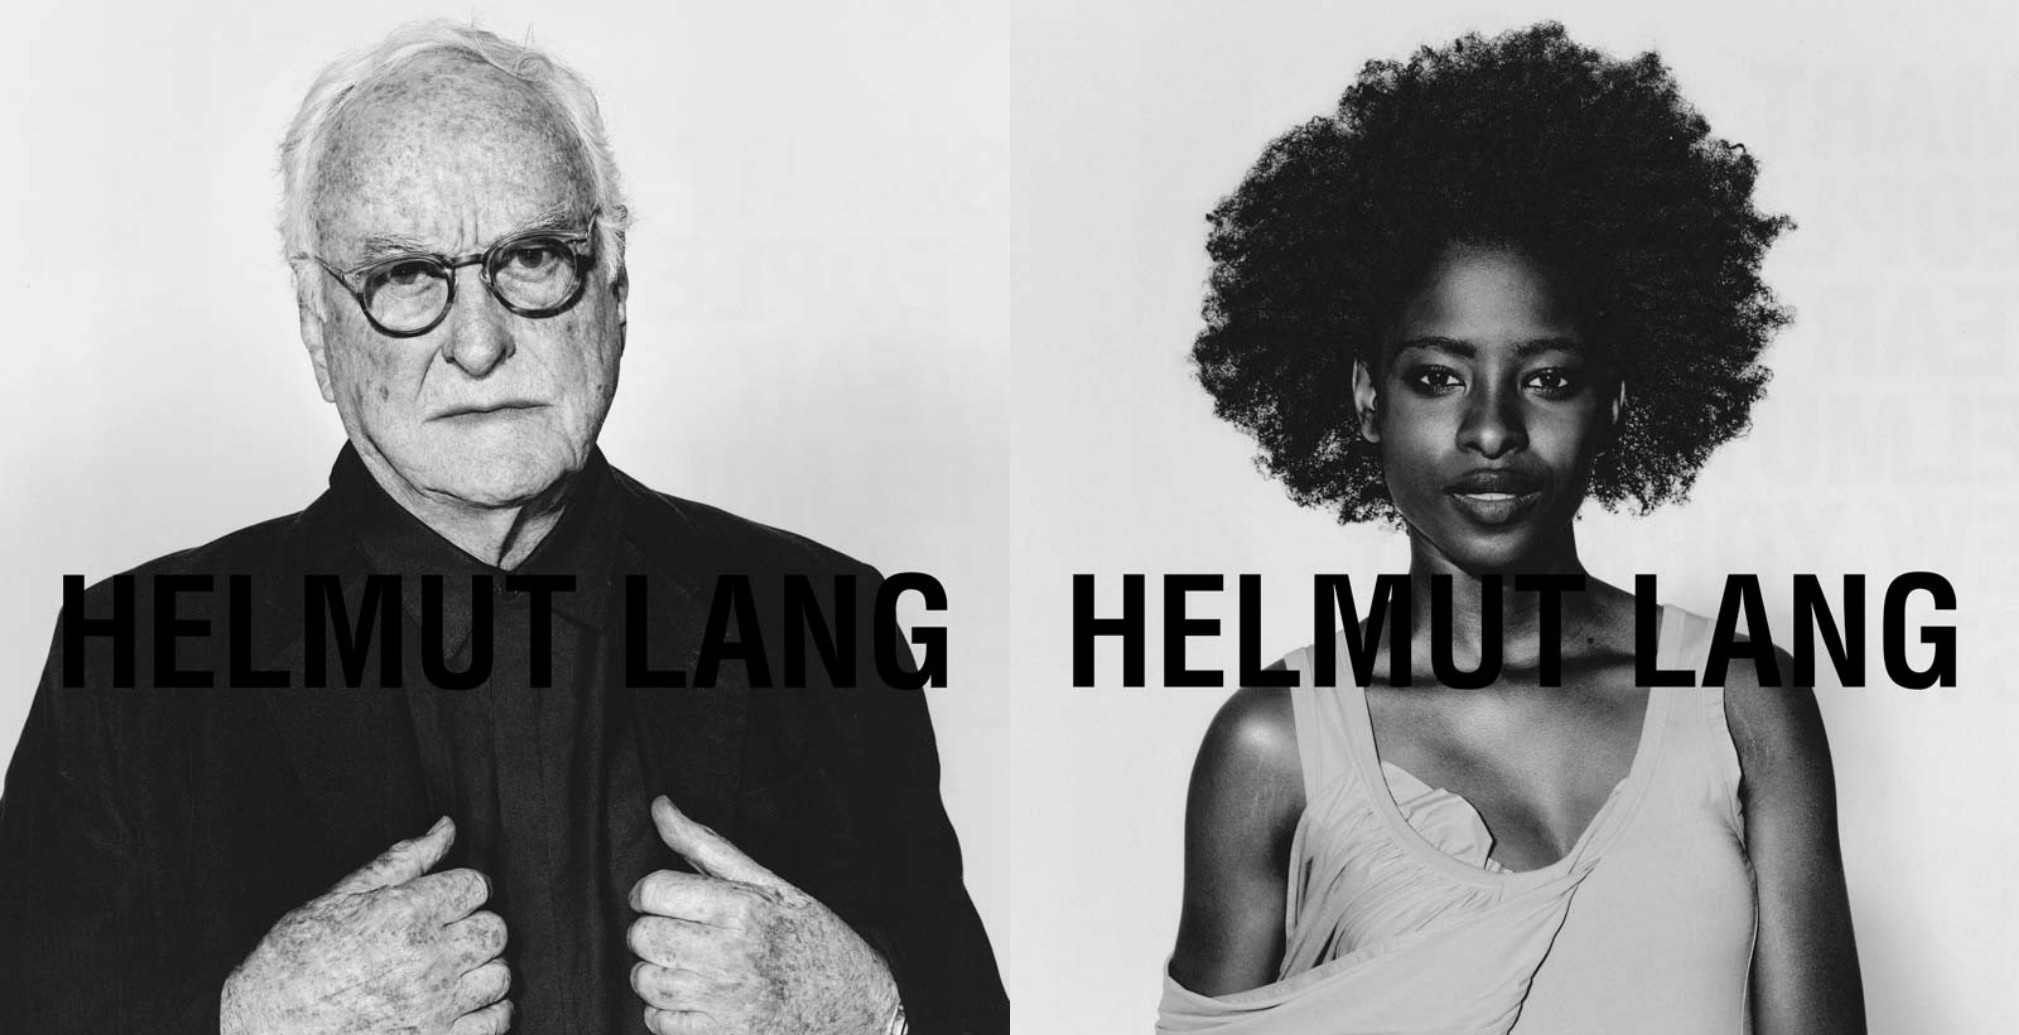 Режиссеры, художники и юрист в кампании Аликс Браун для Helmut Lang